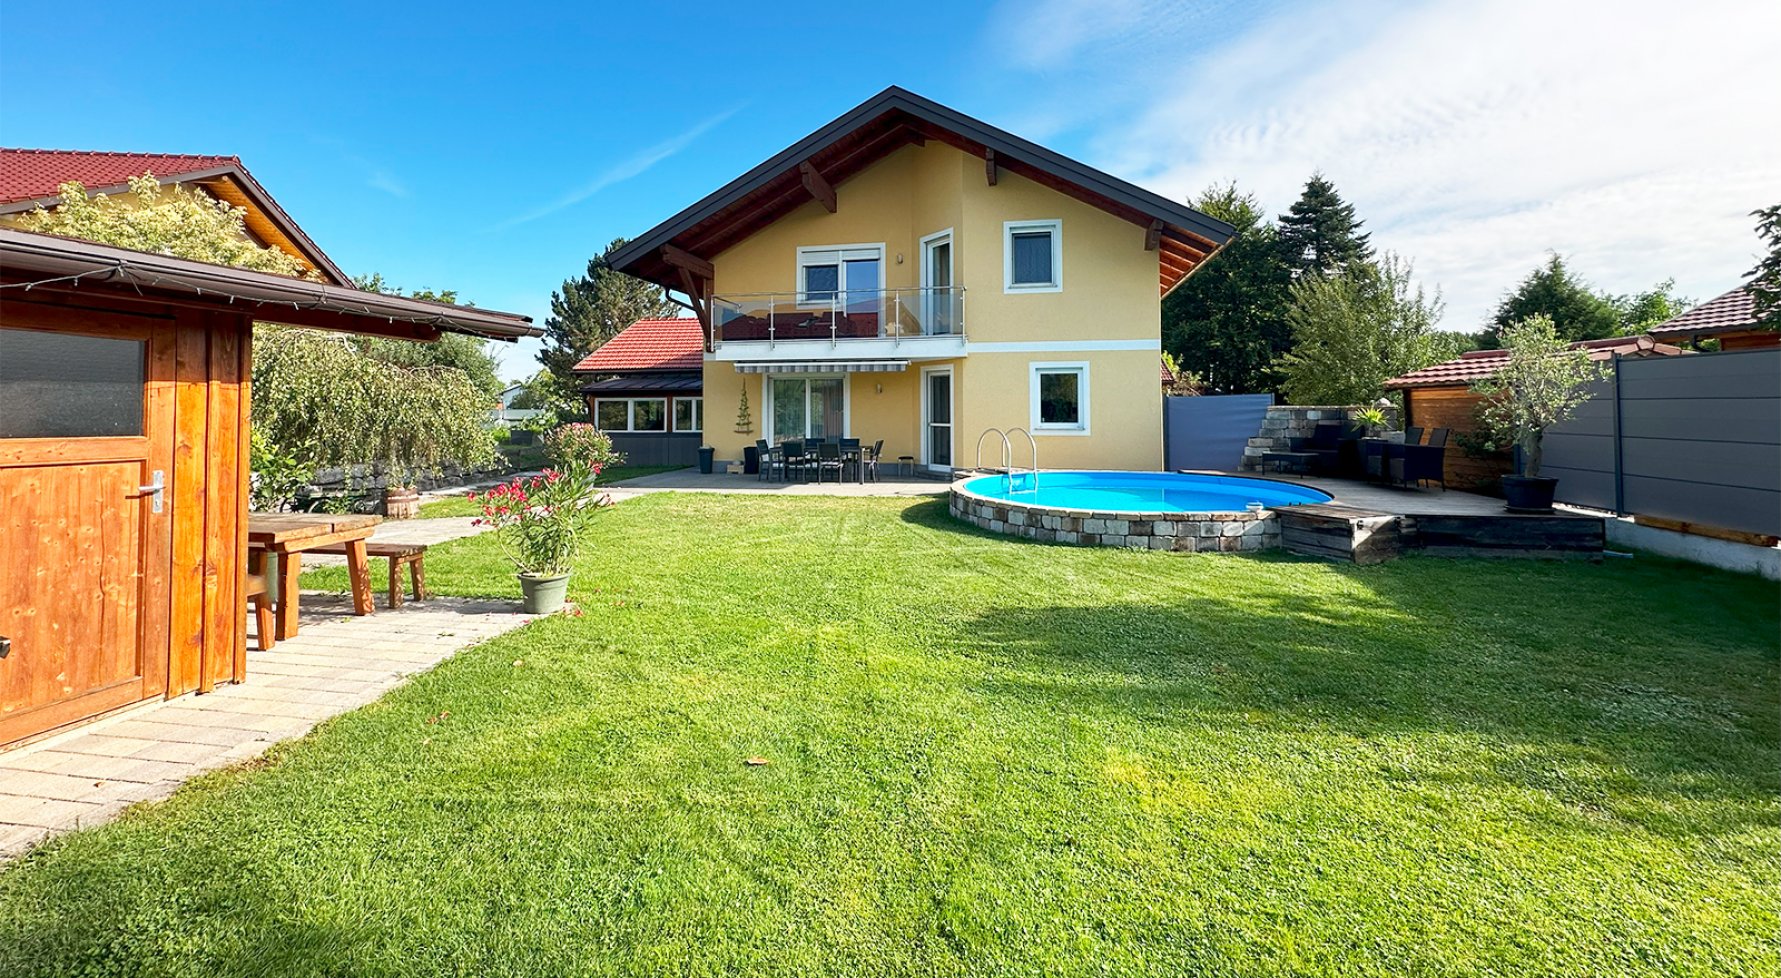 Immobilie in 5221 Lochen am See: LOCHEN AM SEE! Einfamilienhaus mit Pool und großem Grundstück! - bild 1